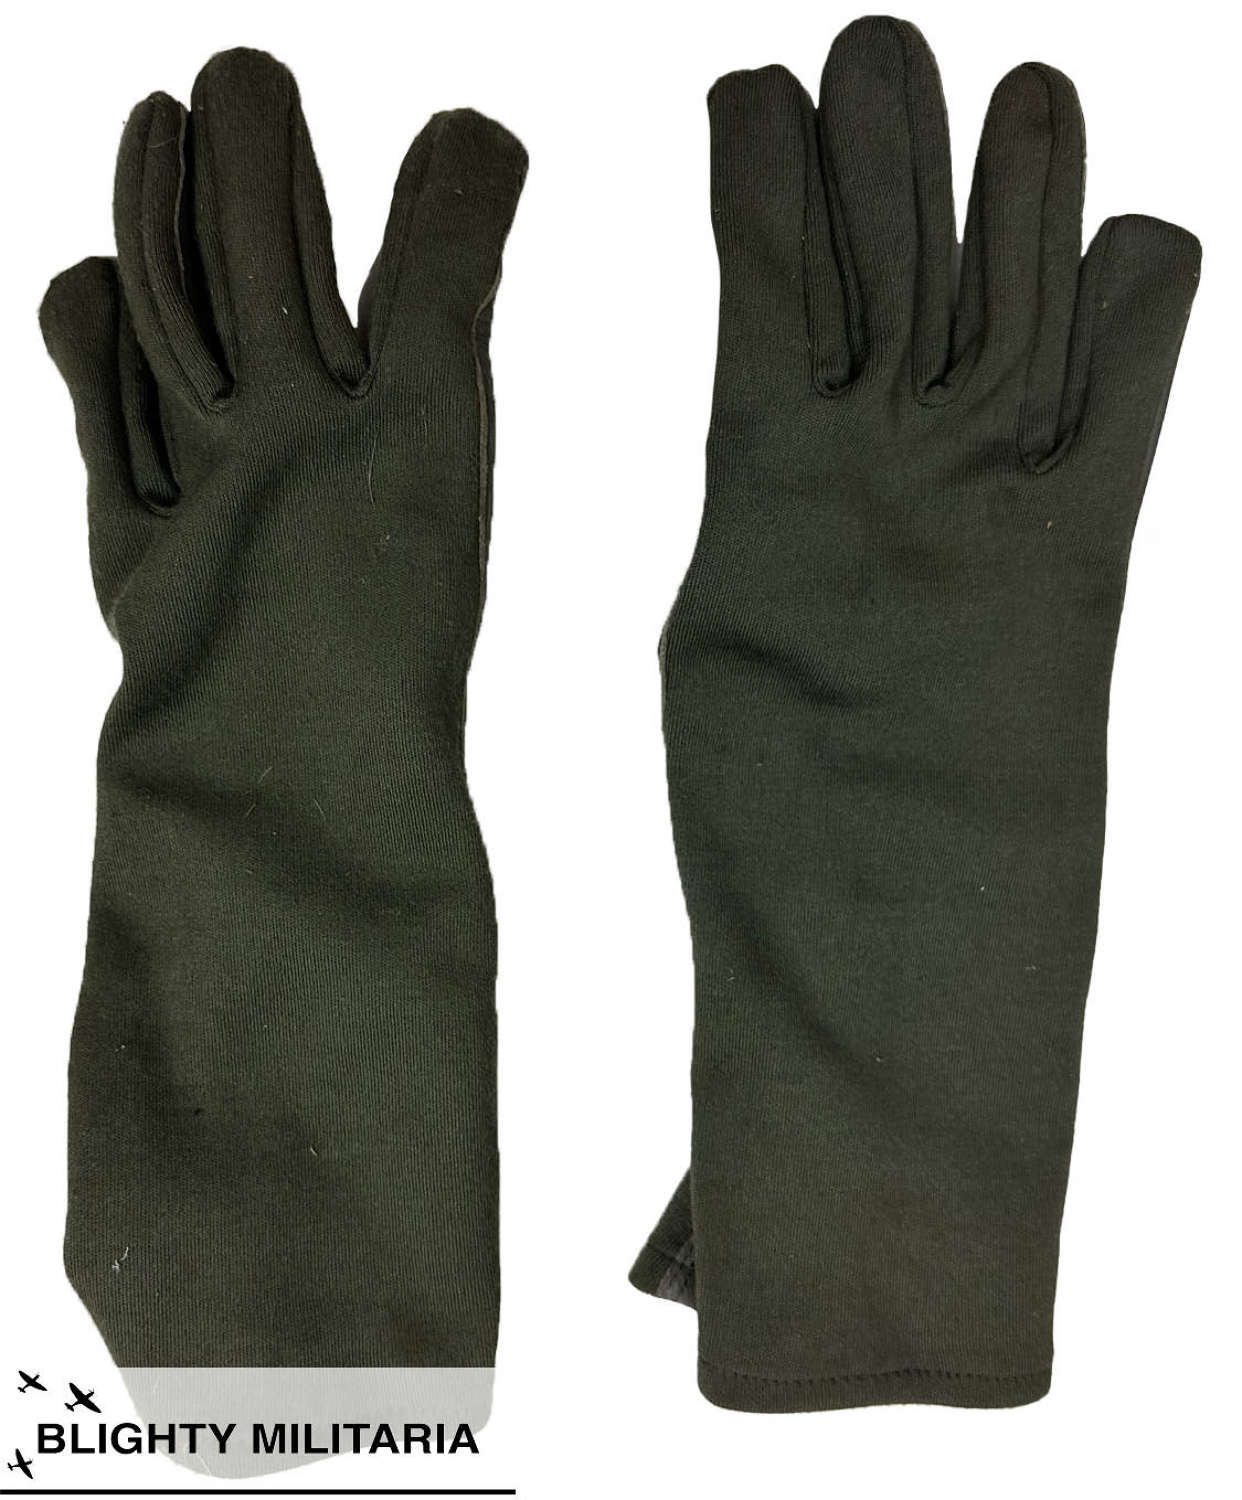 Original 1997 Dated RAF Nomex Flying Gloves